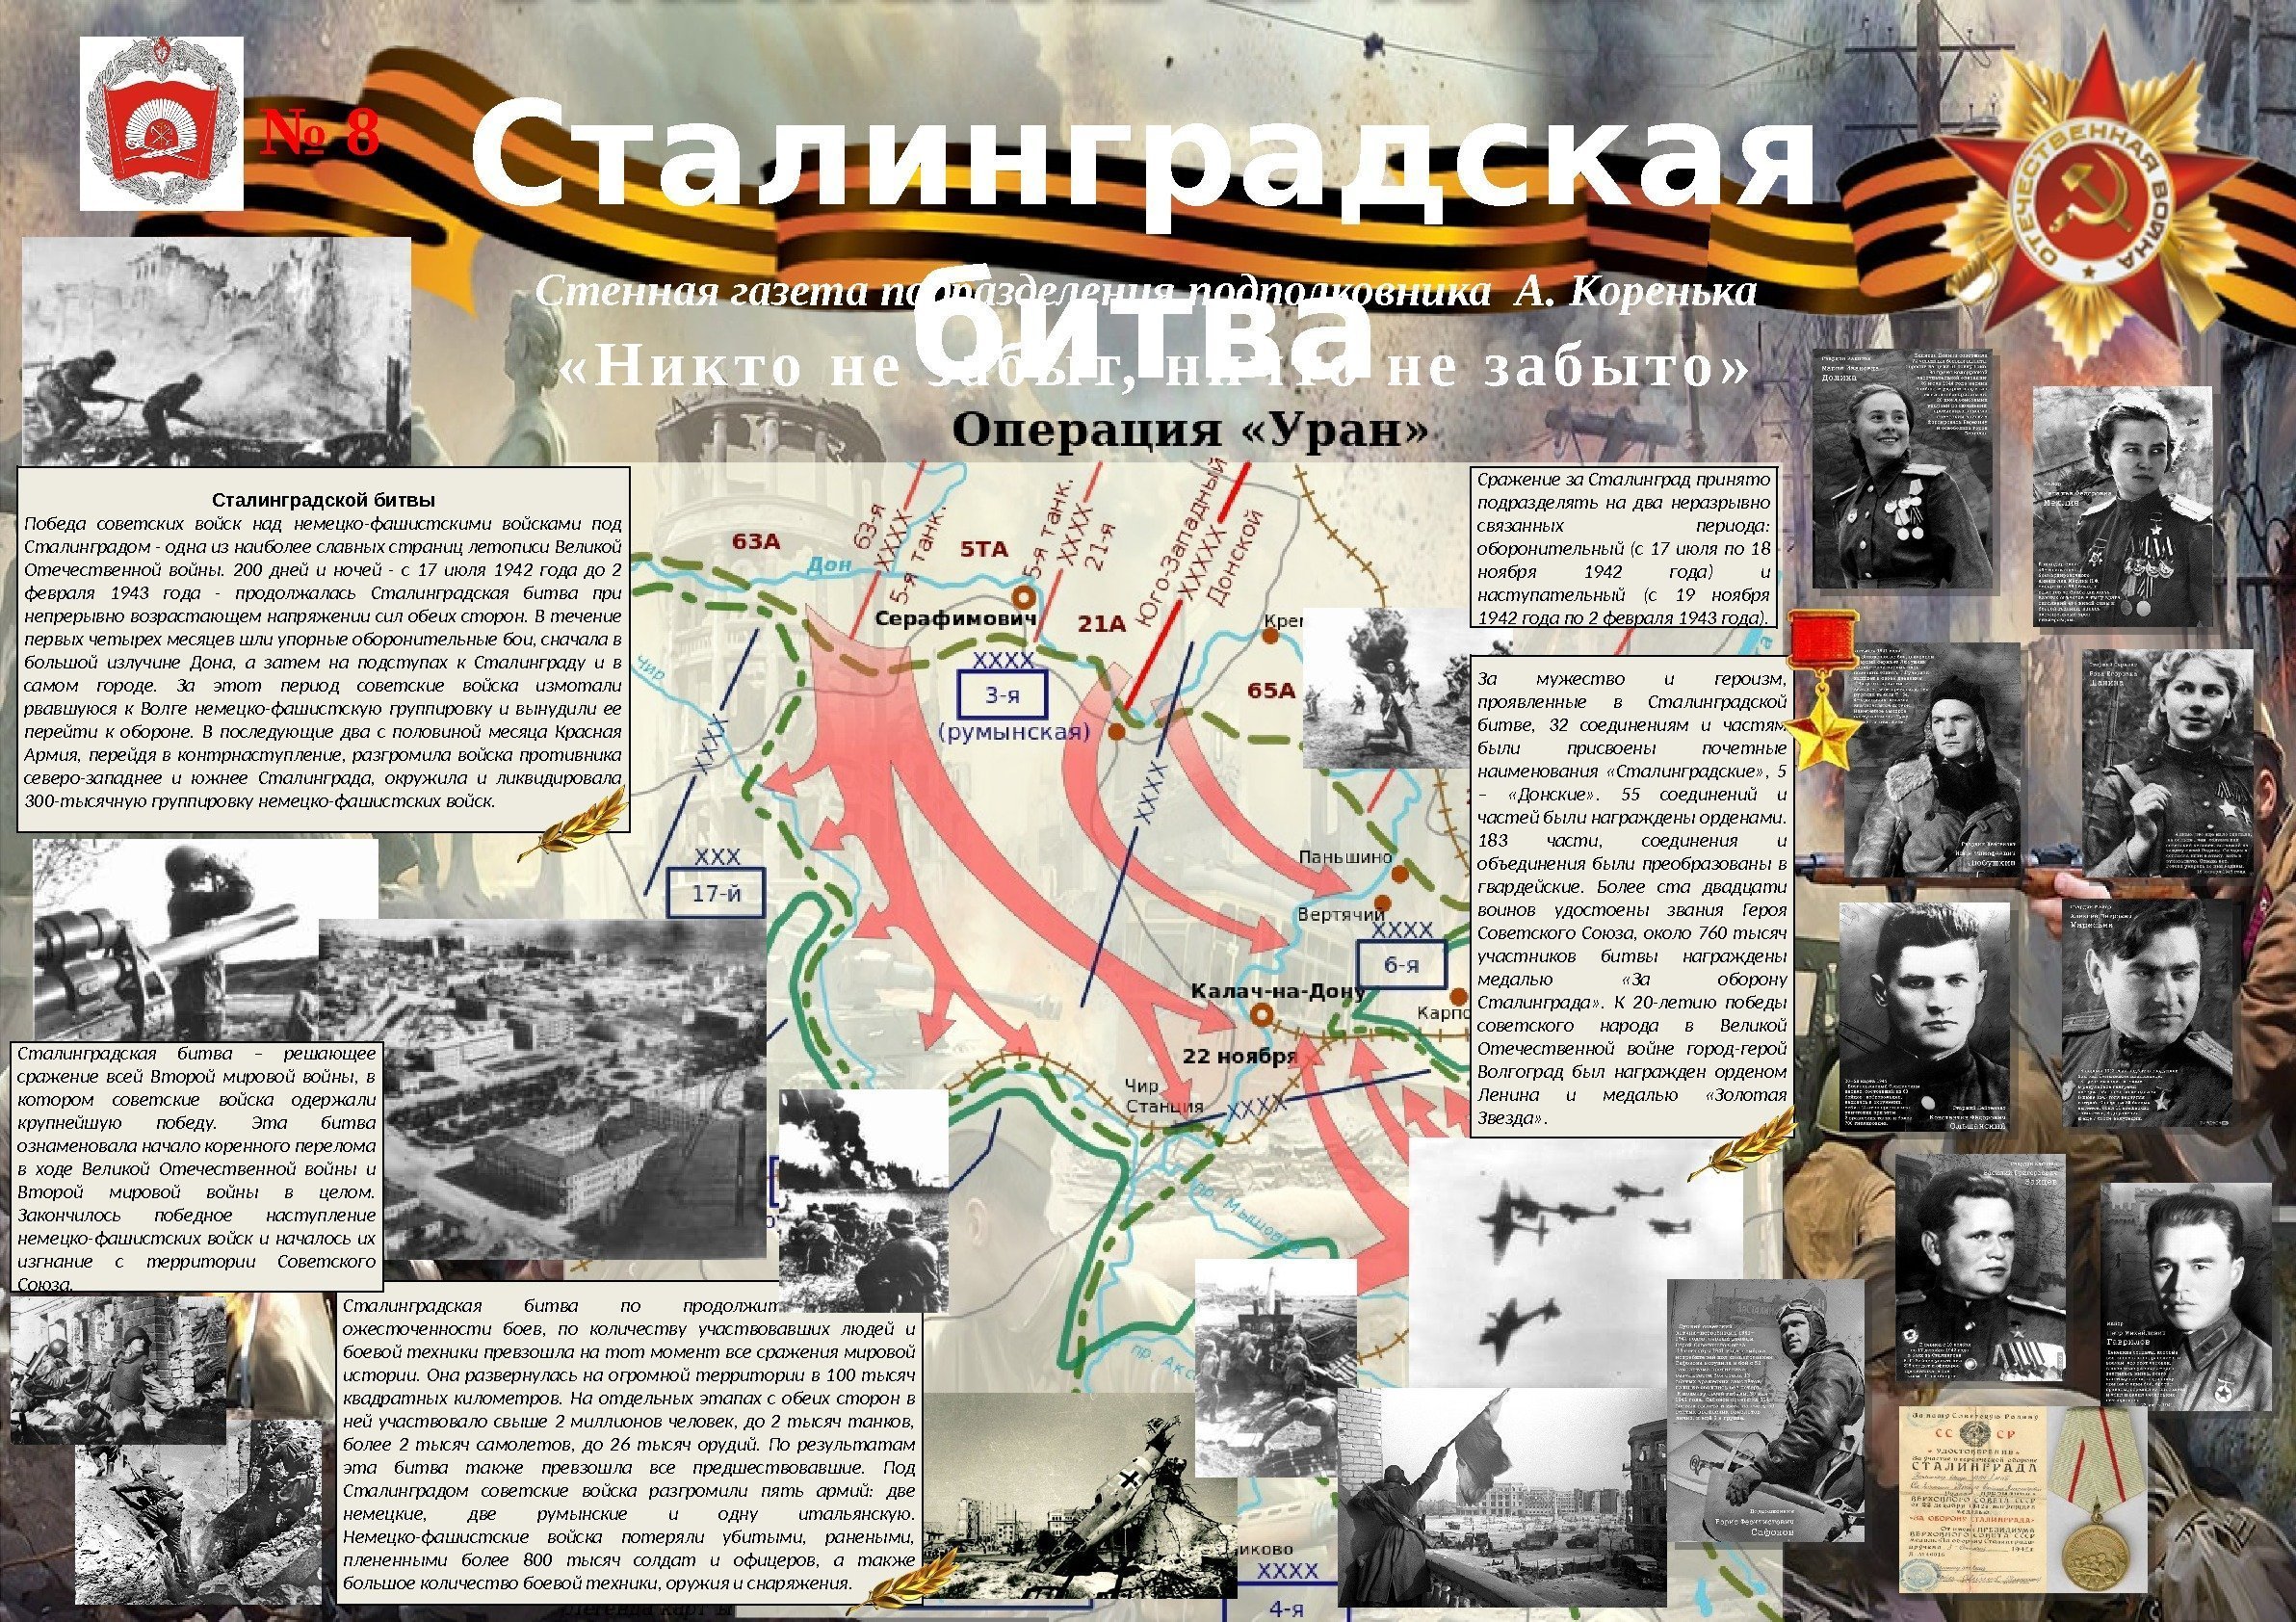 Сталинградской битвы Победа советских войск над немецко-фашистскими войсками под Сталинградом - одна из наиболее